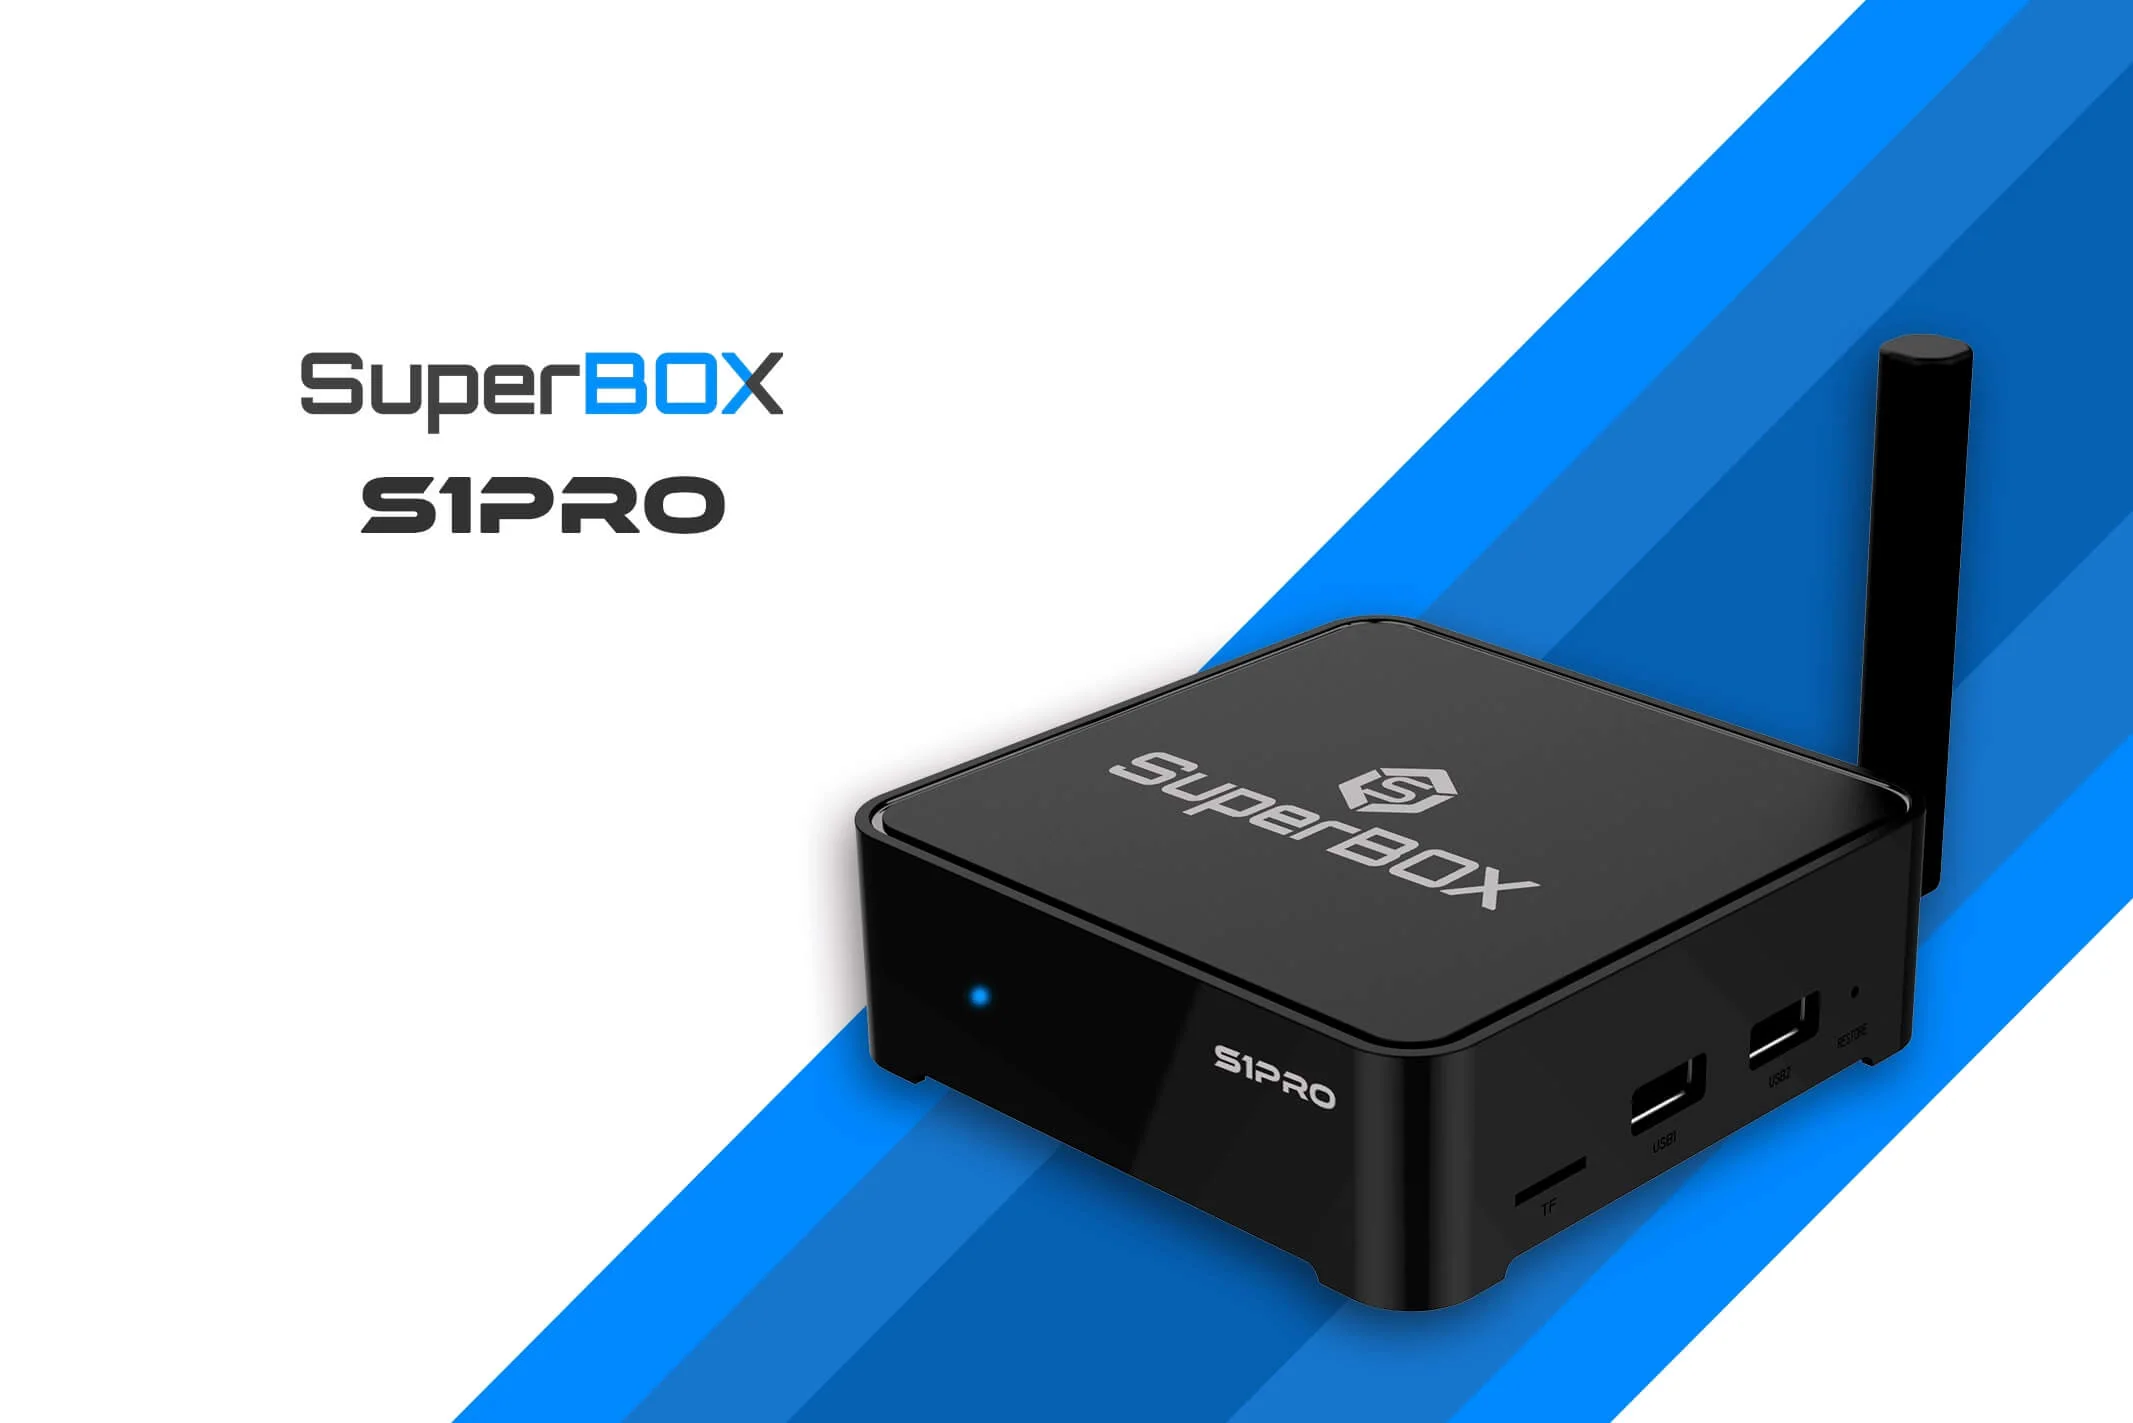 Superbox s. Superbox Elite 4 адаптер. Superbox s2+. S2 Супербокс фото. Review box